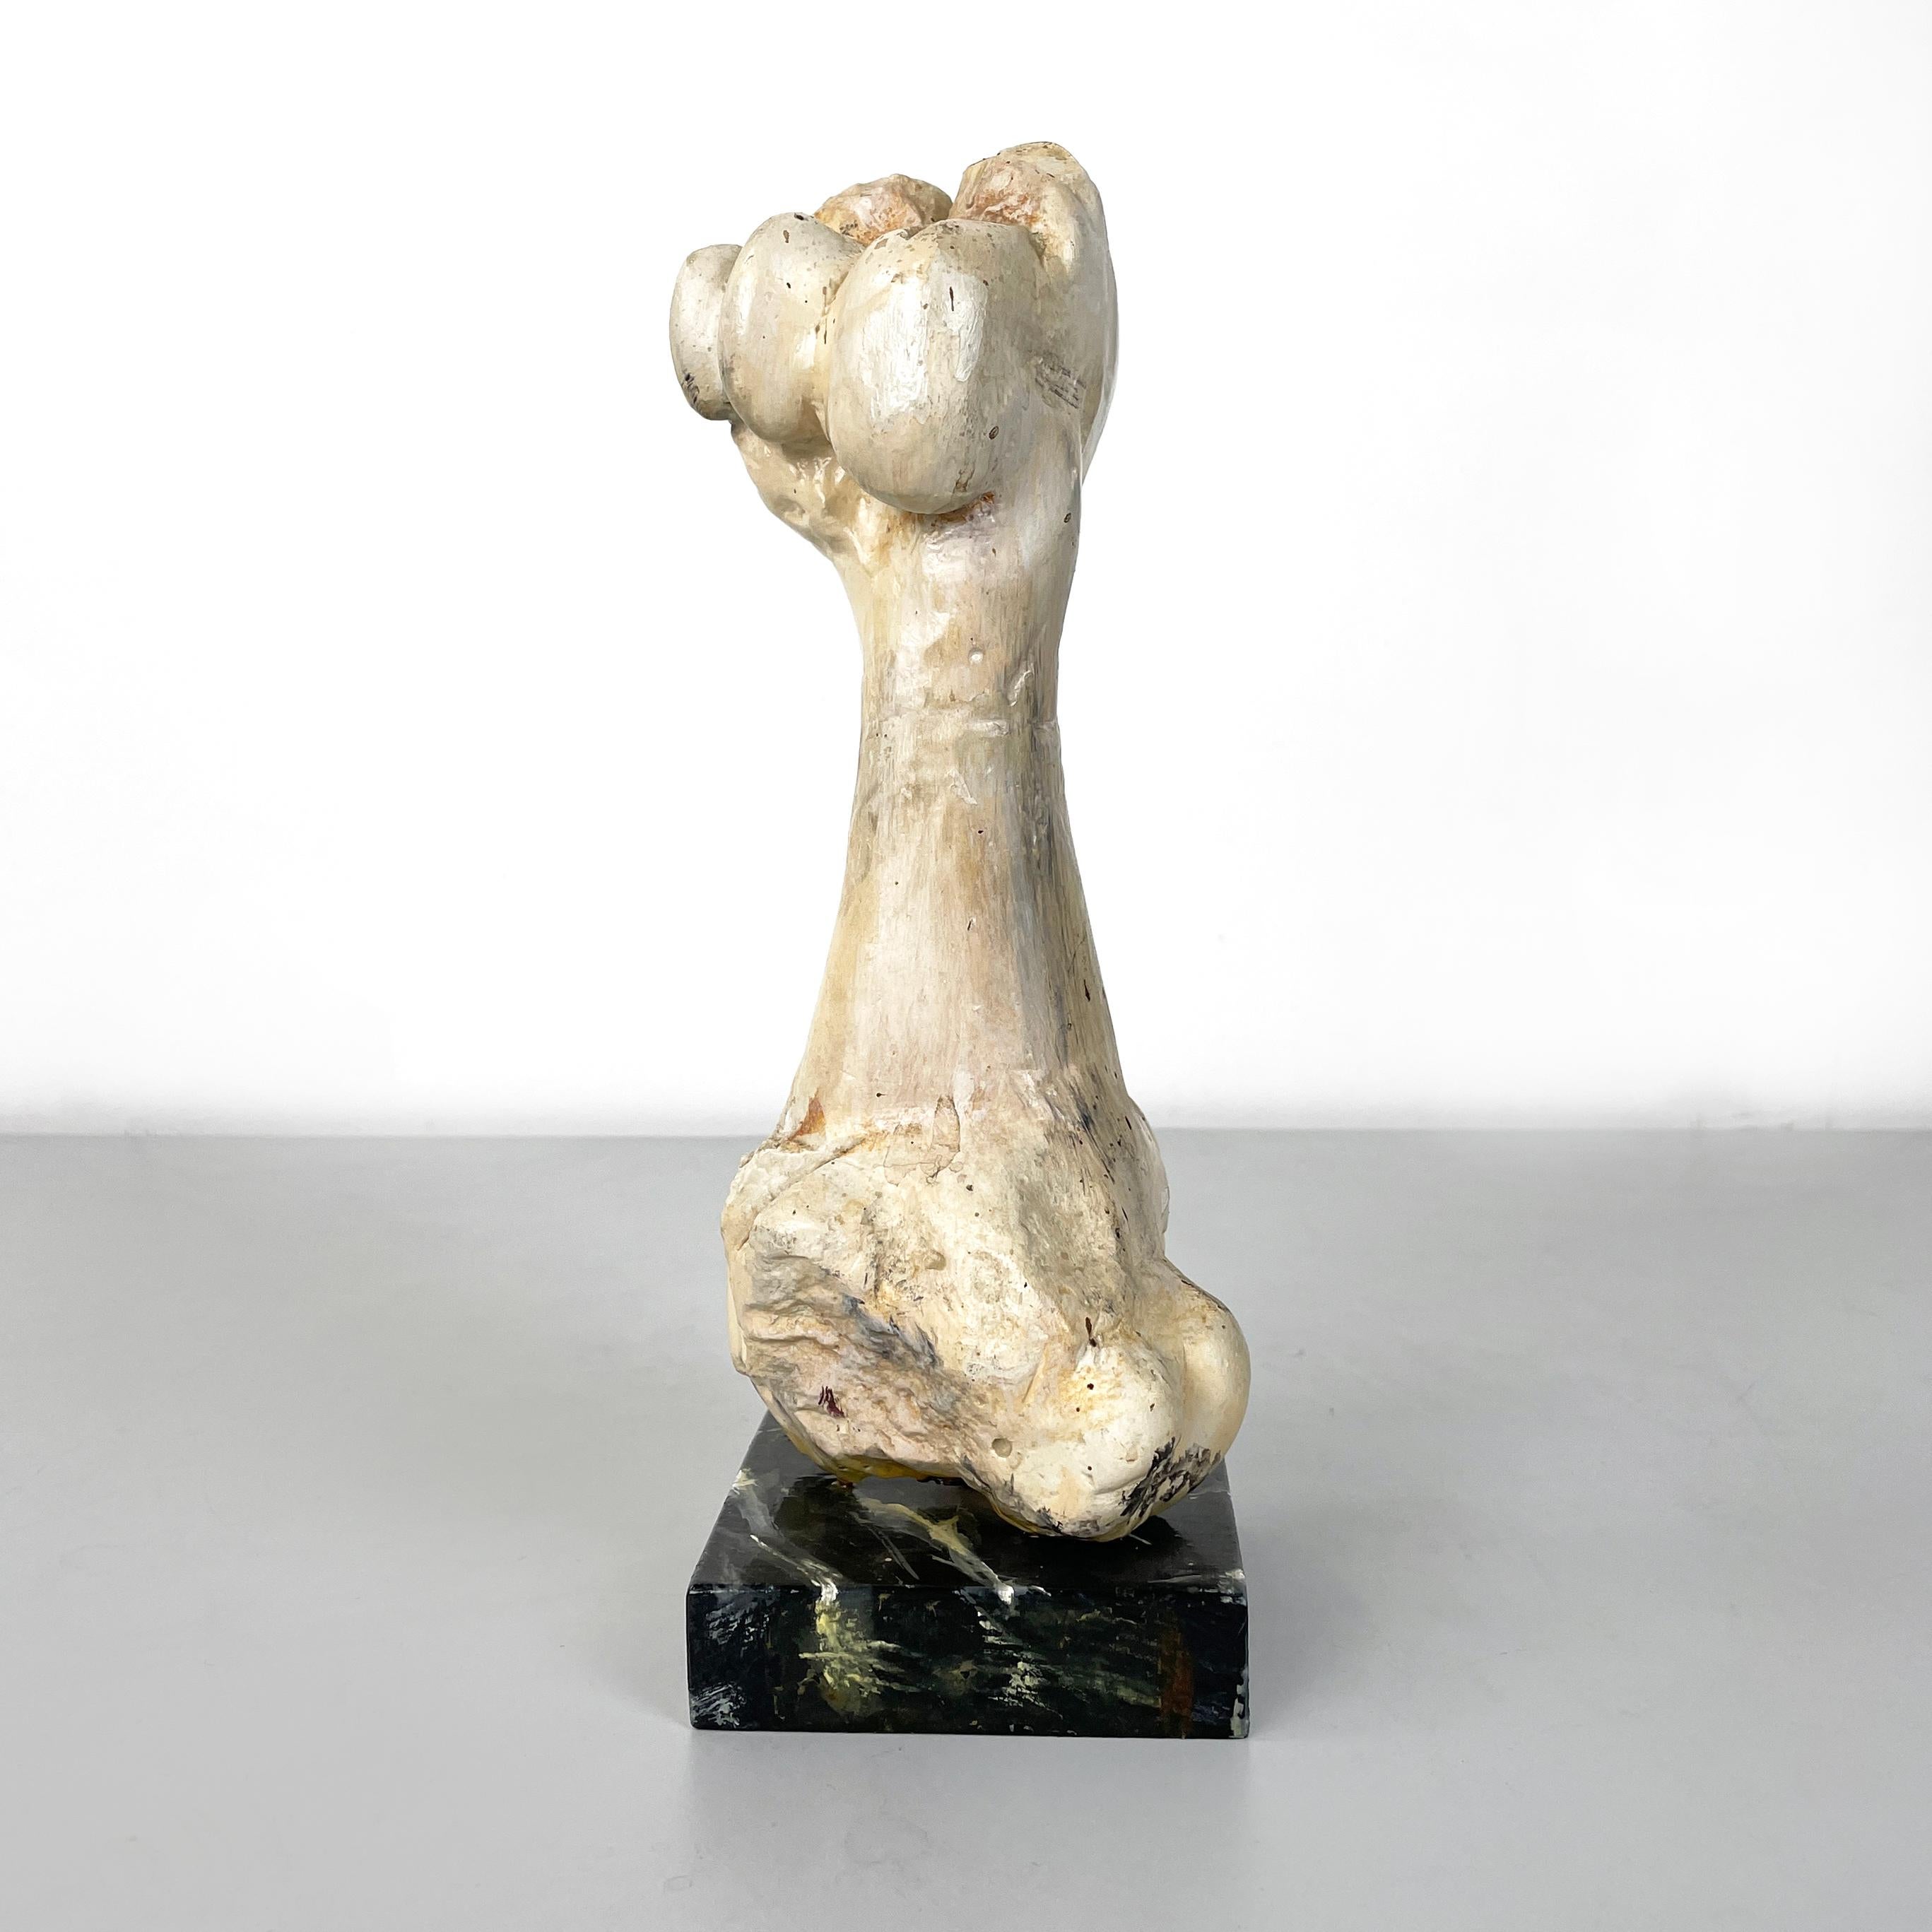 Sculpture italienne moderne en bois d'un os par N.F. Puccio, 1990
Sculpture entièrement en bois peint. Cet objet représente un os court et épais, provenant probablement d'un animal. La base carrée est en bois peint en noir et blanc pour créer un